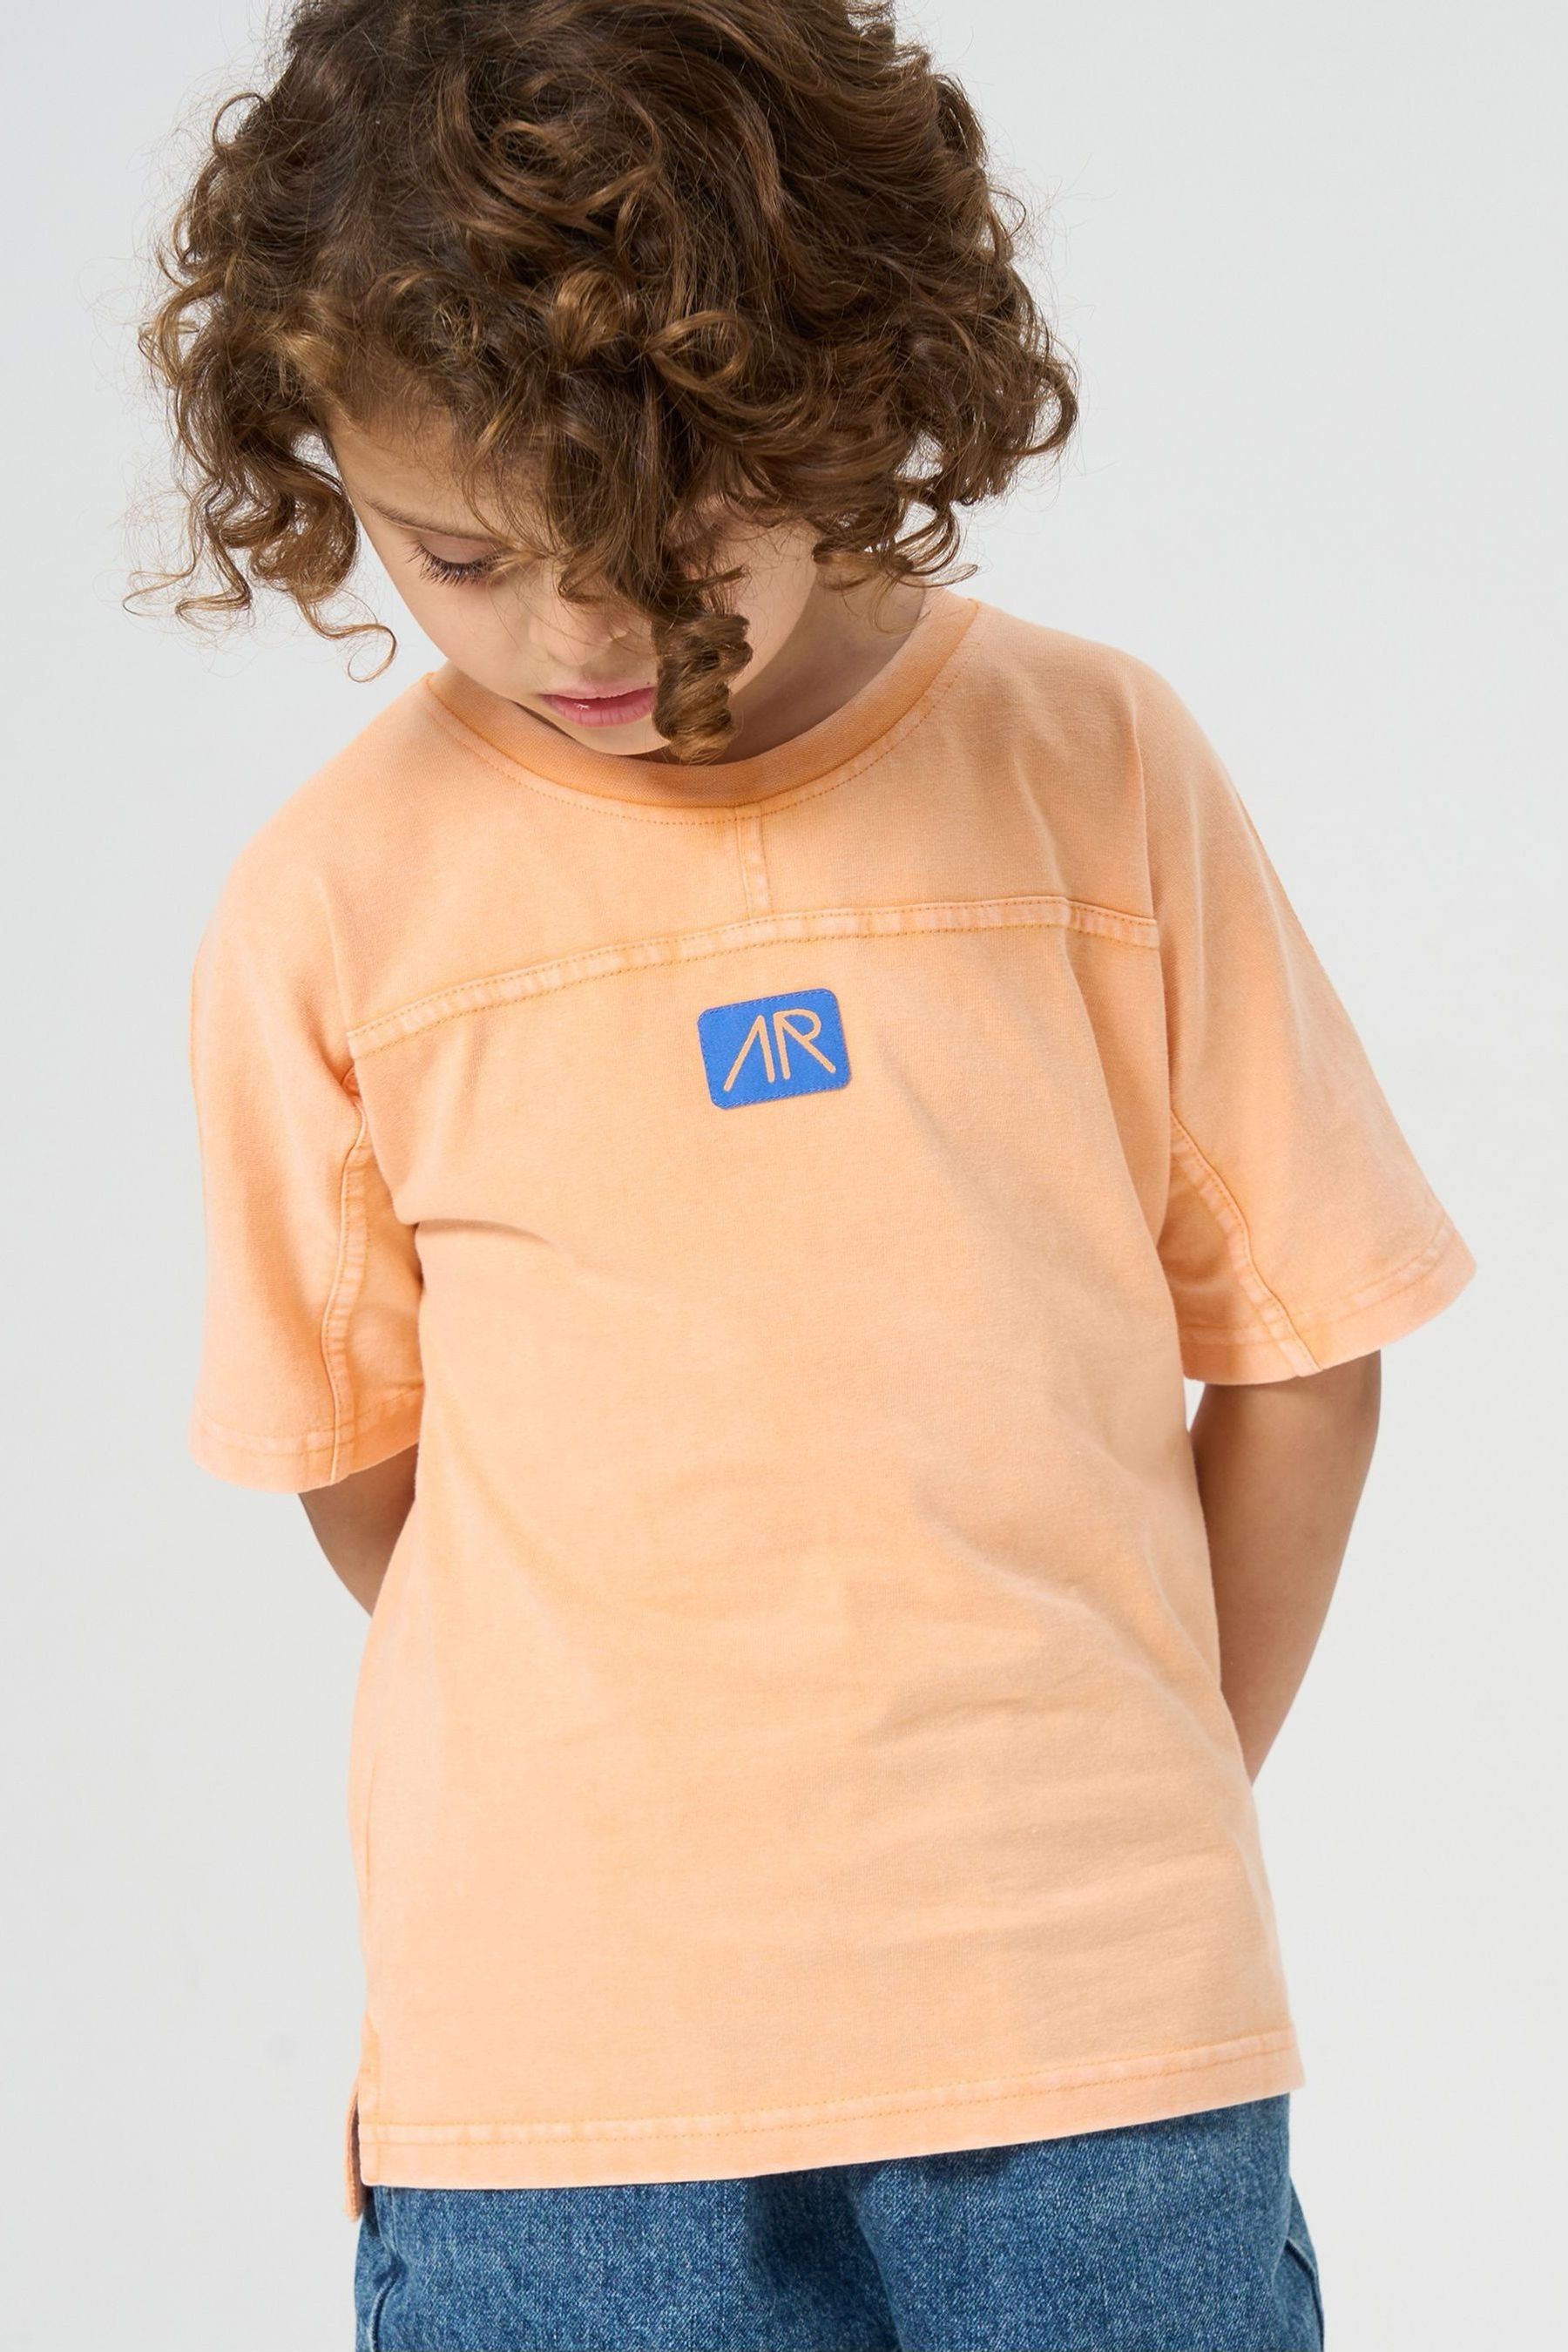 Оранжевая футболка Evan с стираным эффектом Angel & Rocket, оранжевый футболка laredoute футболка evan объемного покроя s оранжевый